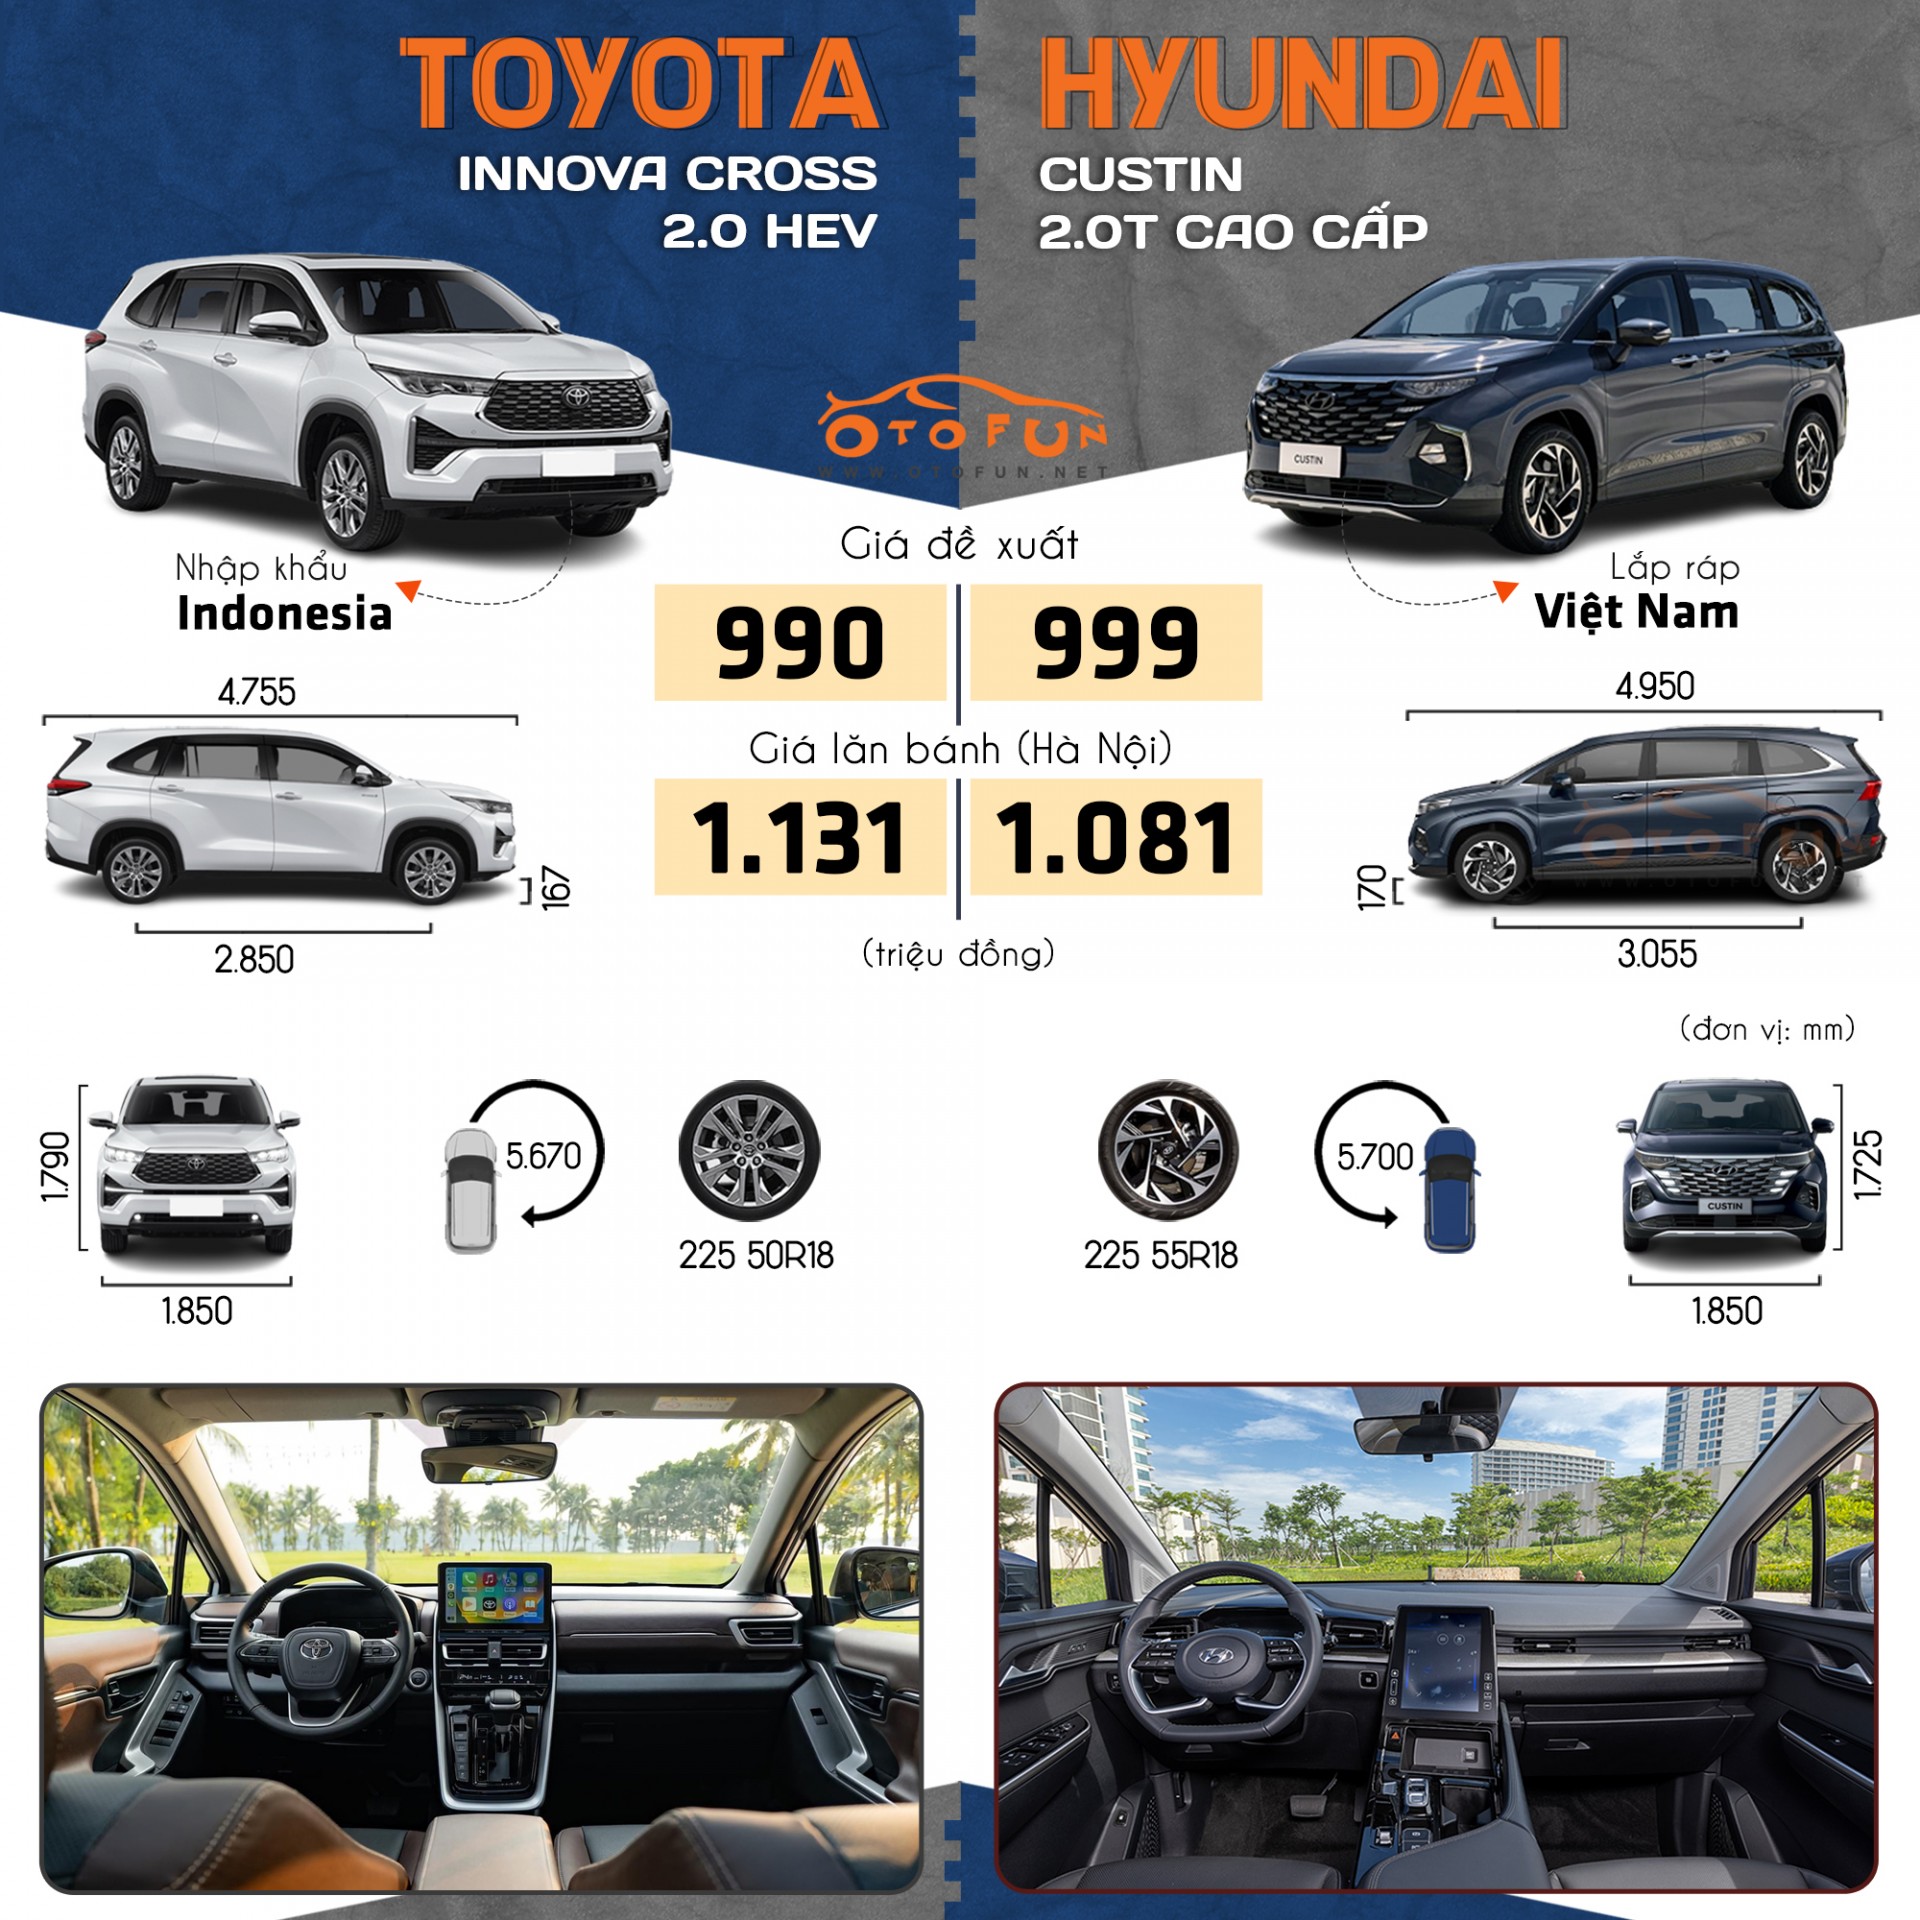 So sánh Toyota Innova Cross bản 2.0 HEV và Hyundai Custin bản 2.0T Cao cấp